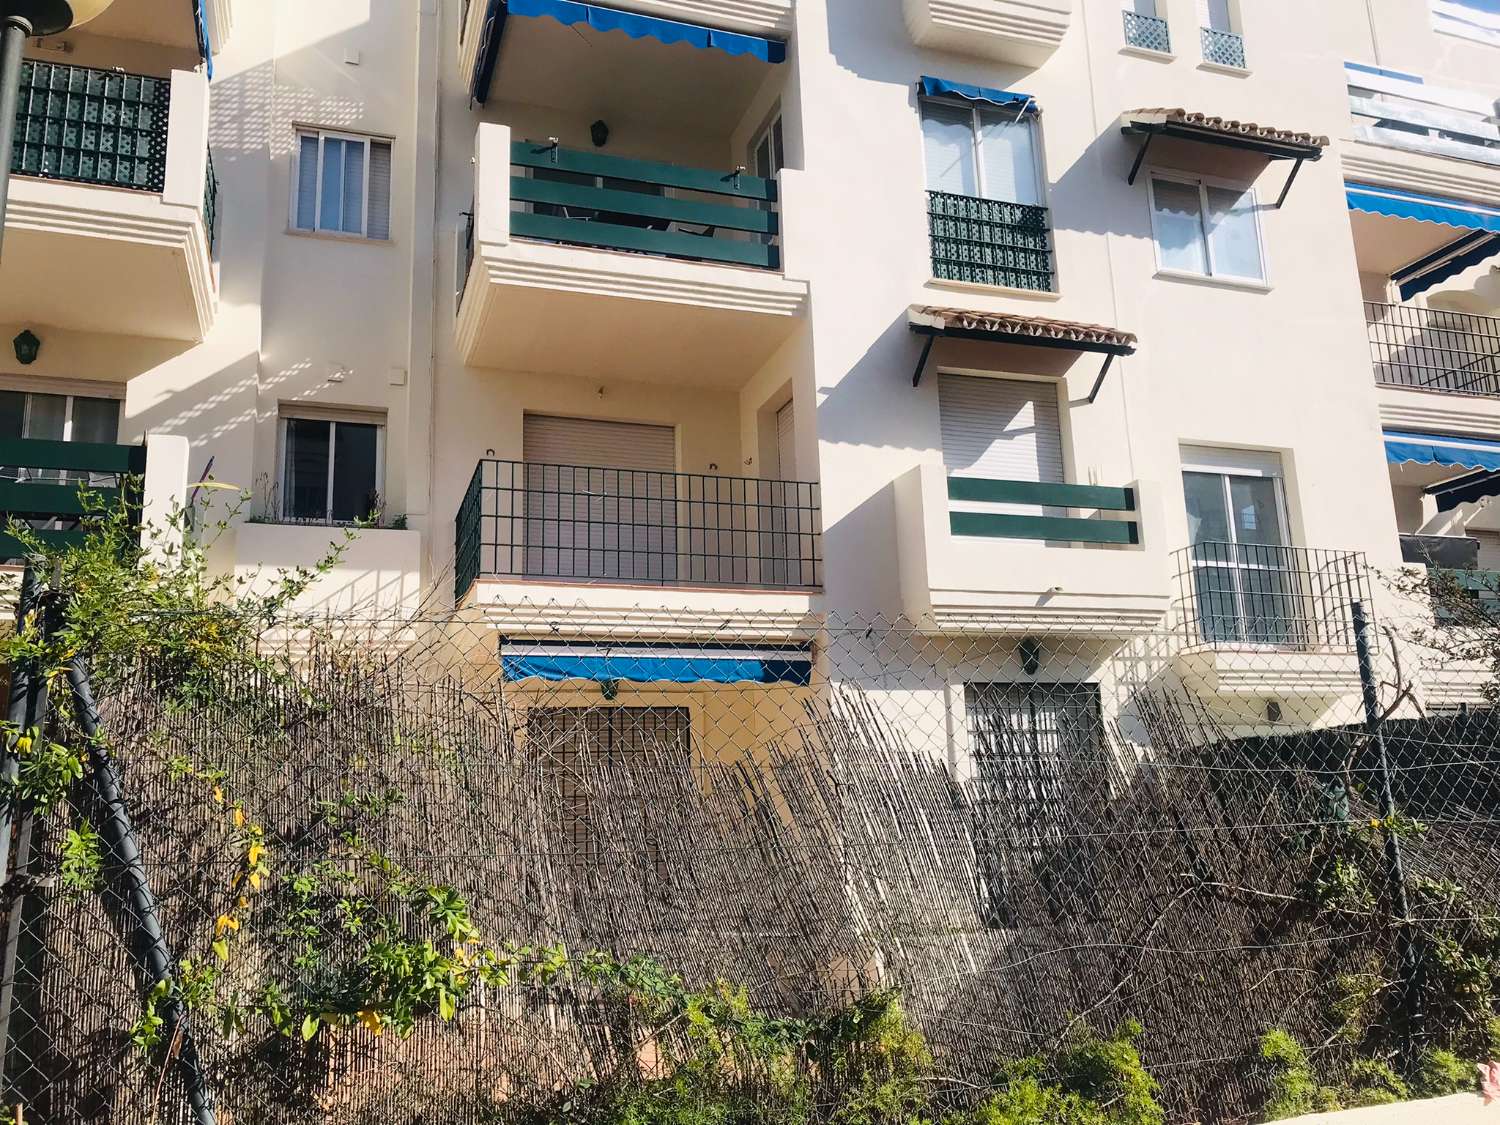 Viehättävä asunto myytävänä. Kätevä sijainti lähellä Puerto Banusta, Marbella.